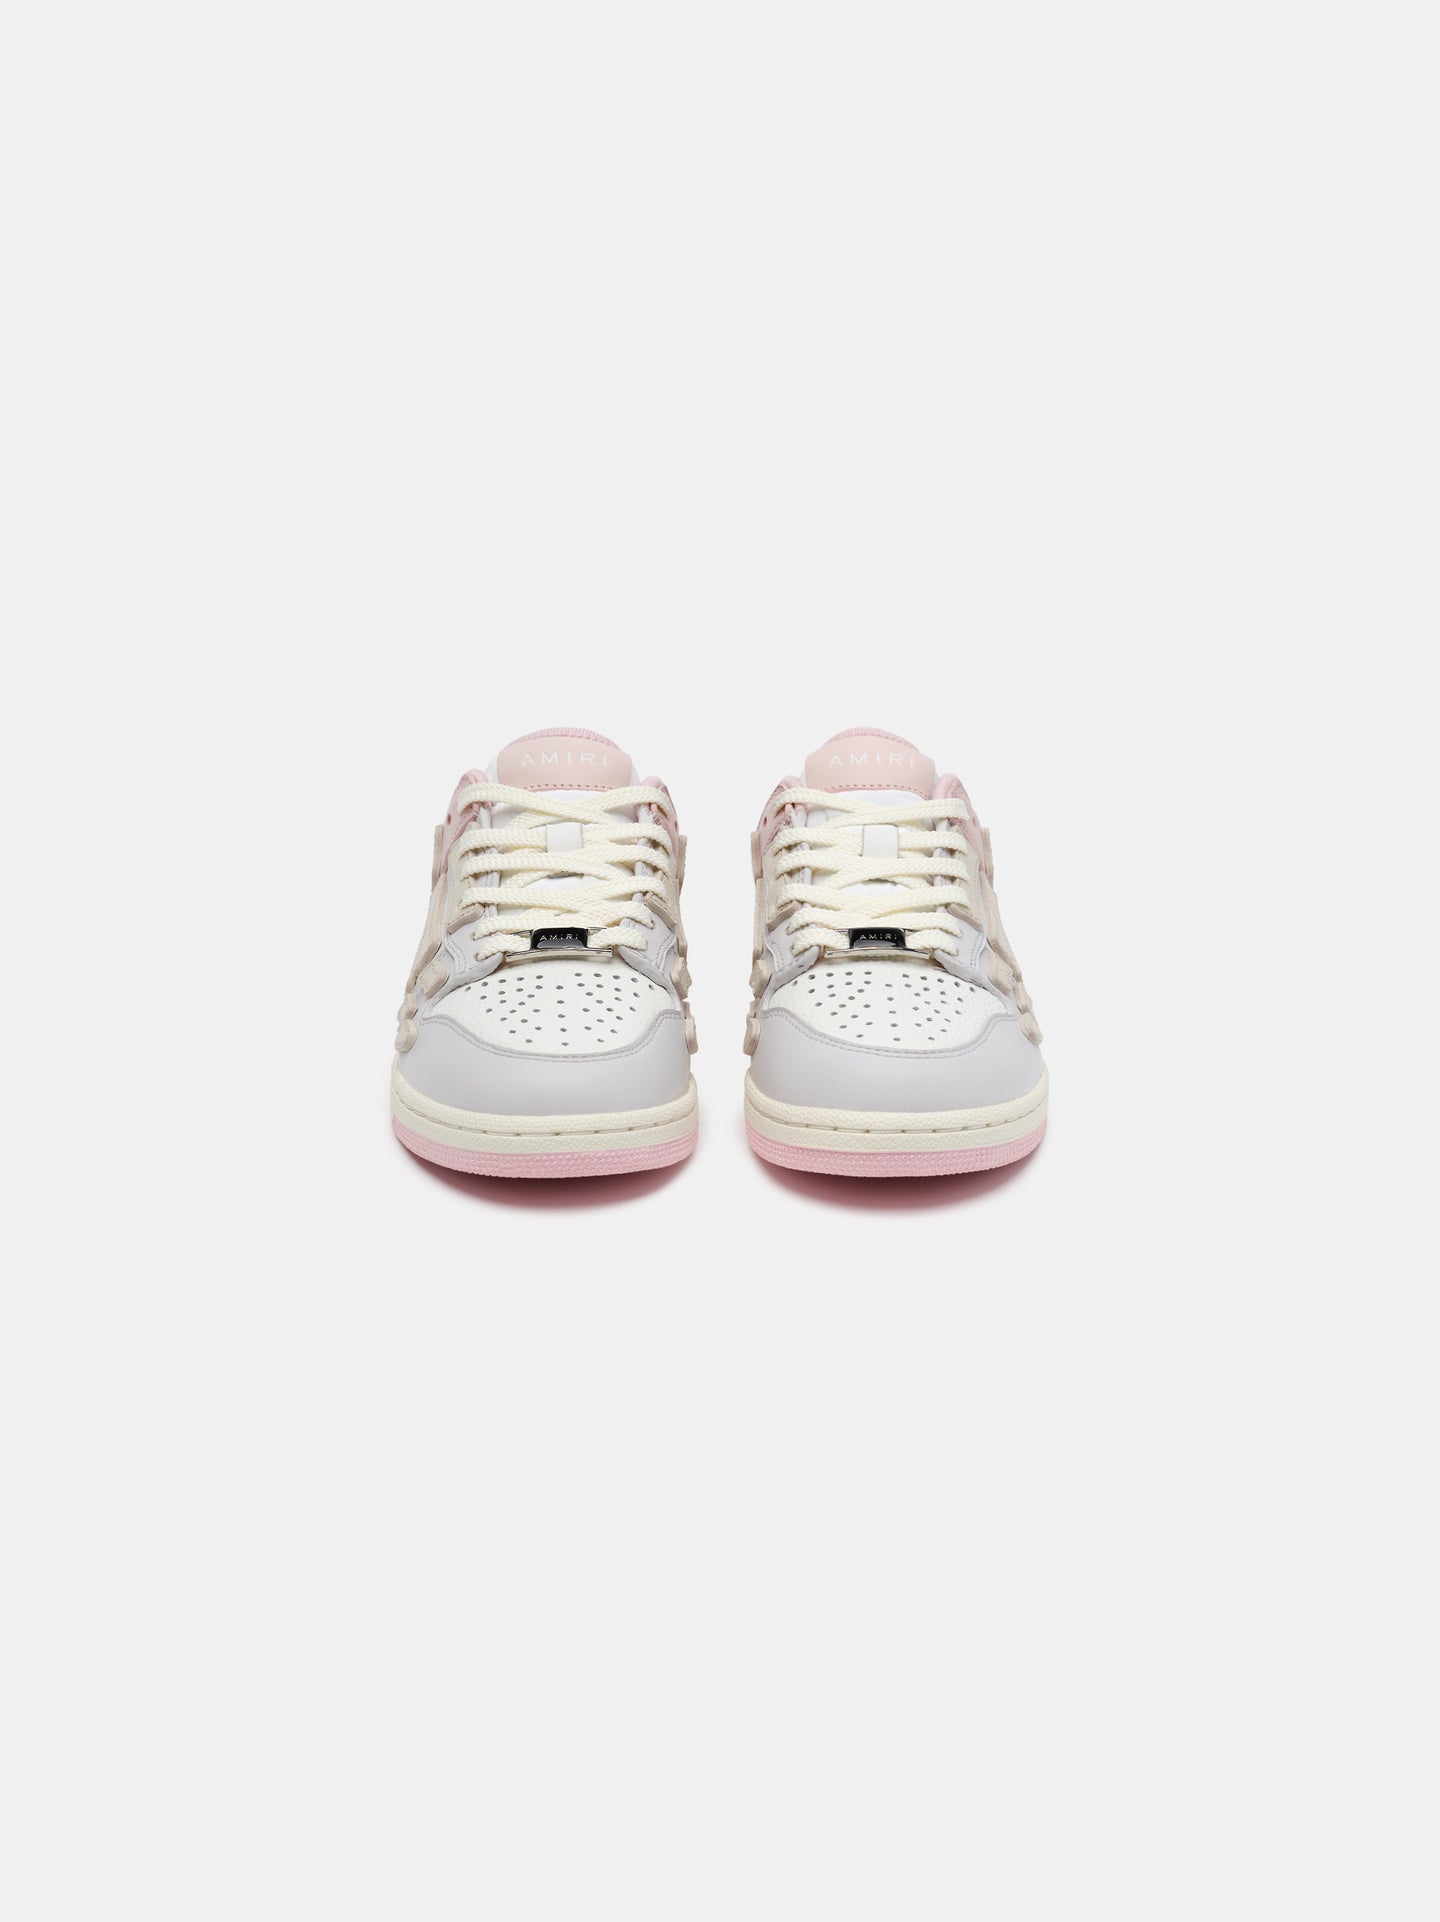 KIDS - KIDS' TWO-TONE SKEL TOP LOW - Pink White Grey